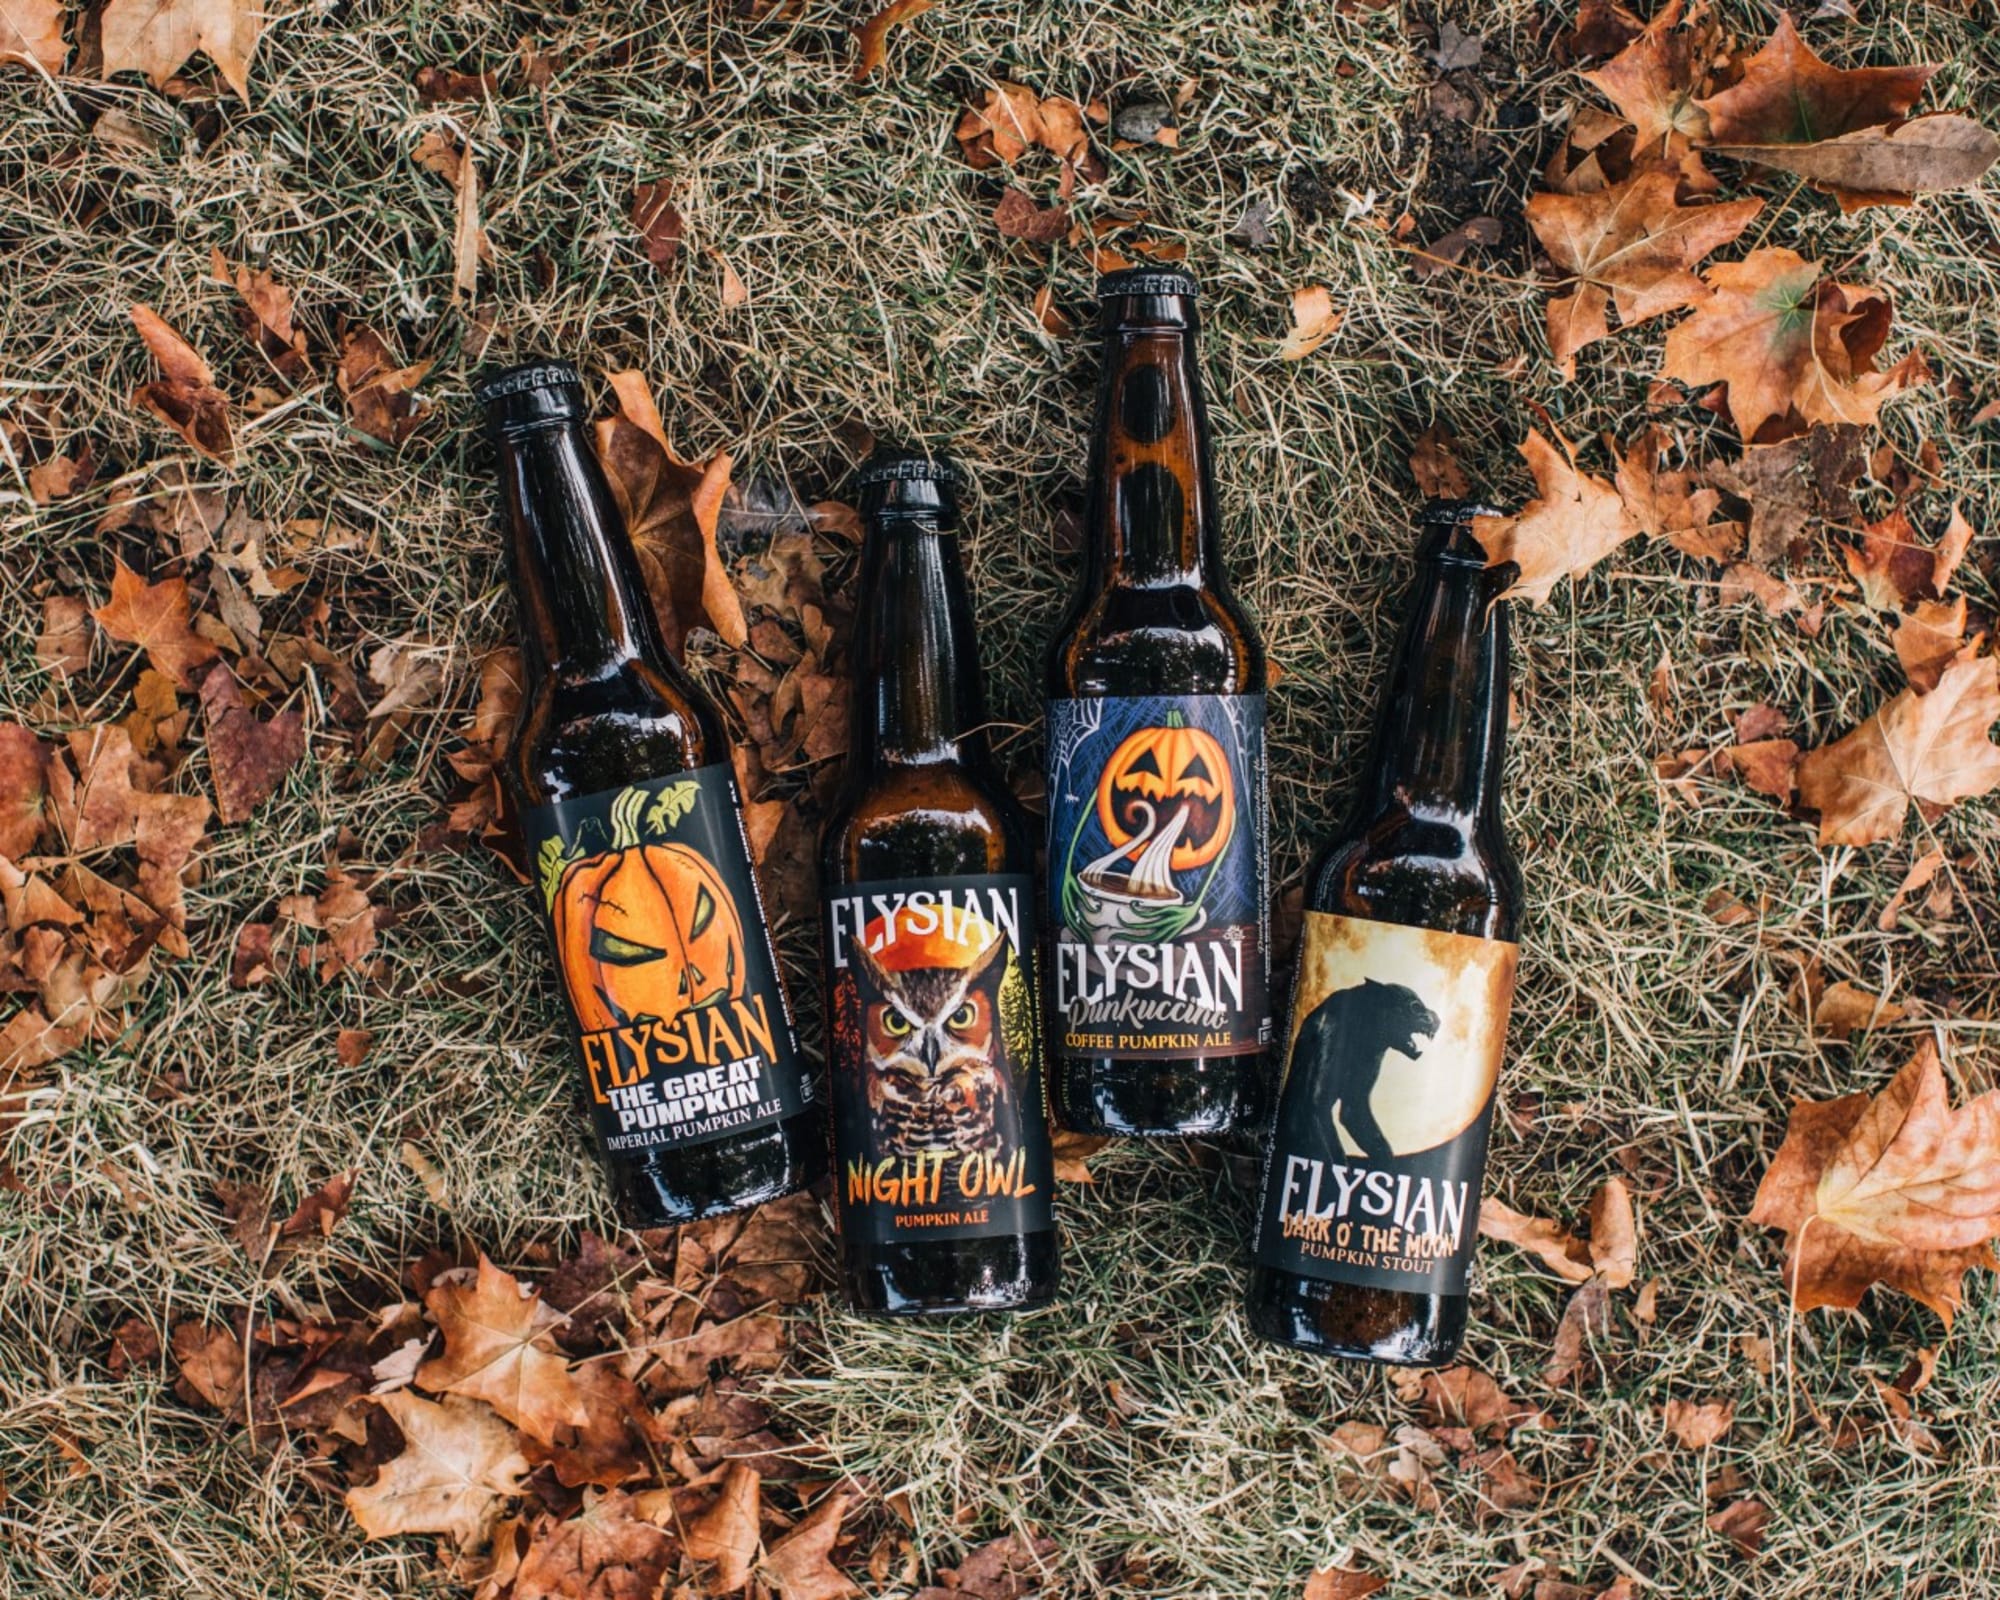 Elysian pumpkin beers deliver all the fantastic fall flavors